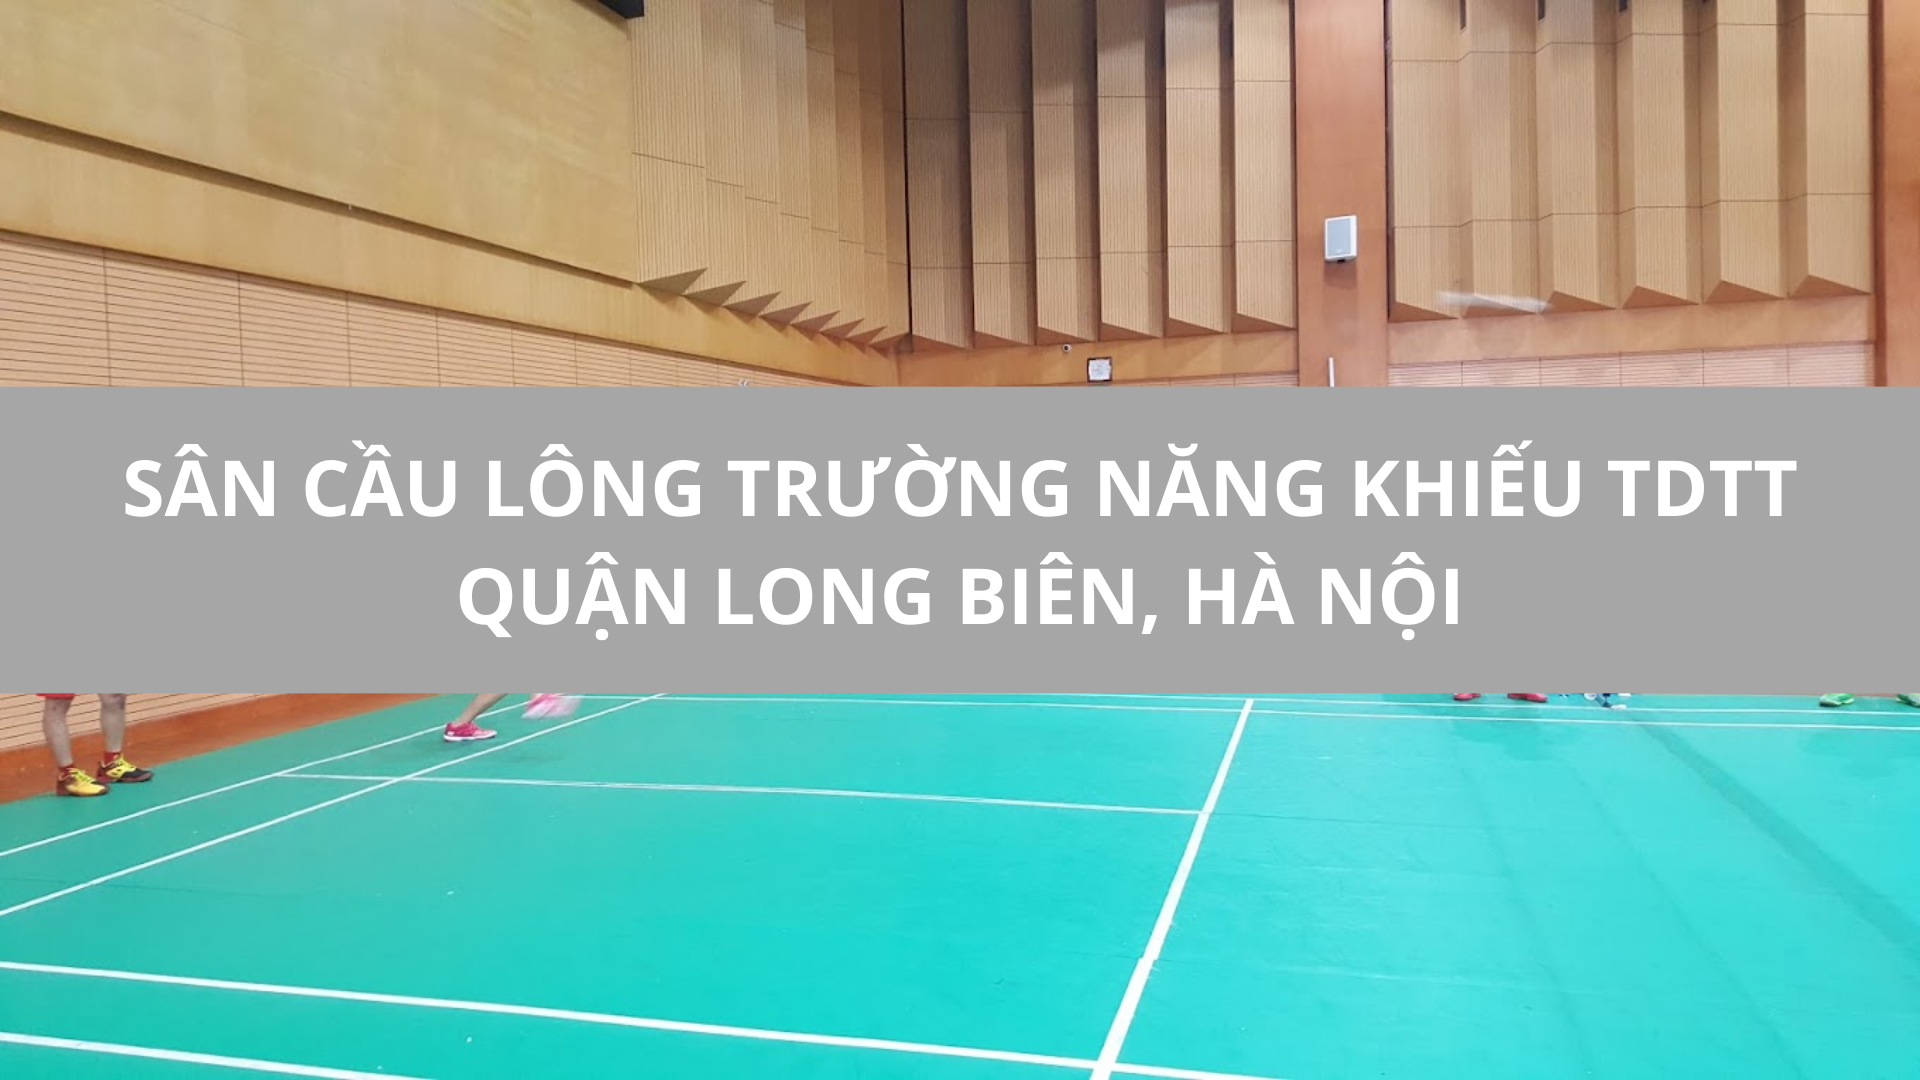 Sân cầu lông Trường Năng khiếu TDTT quận Long Biên, Hà Nội